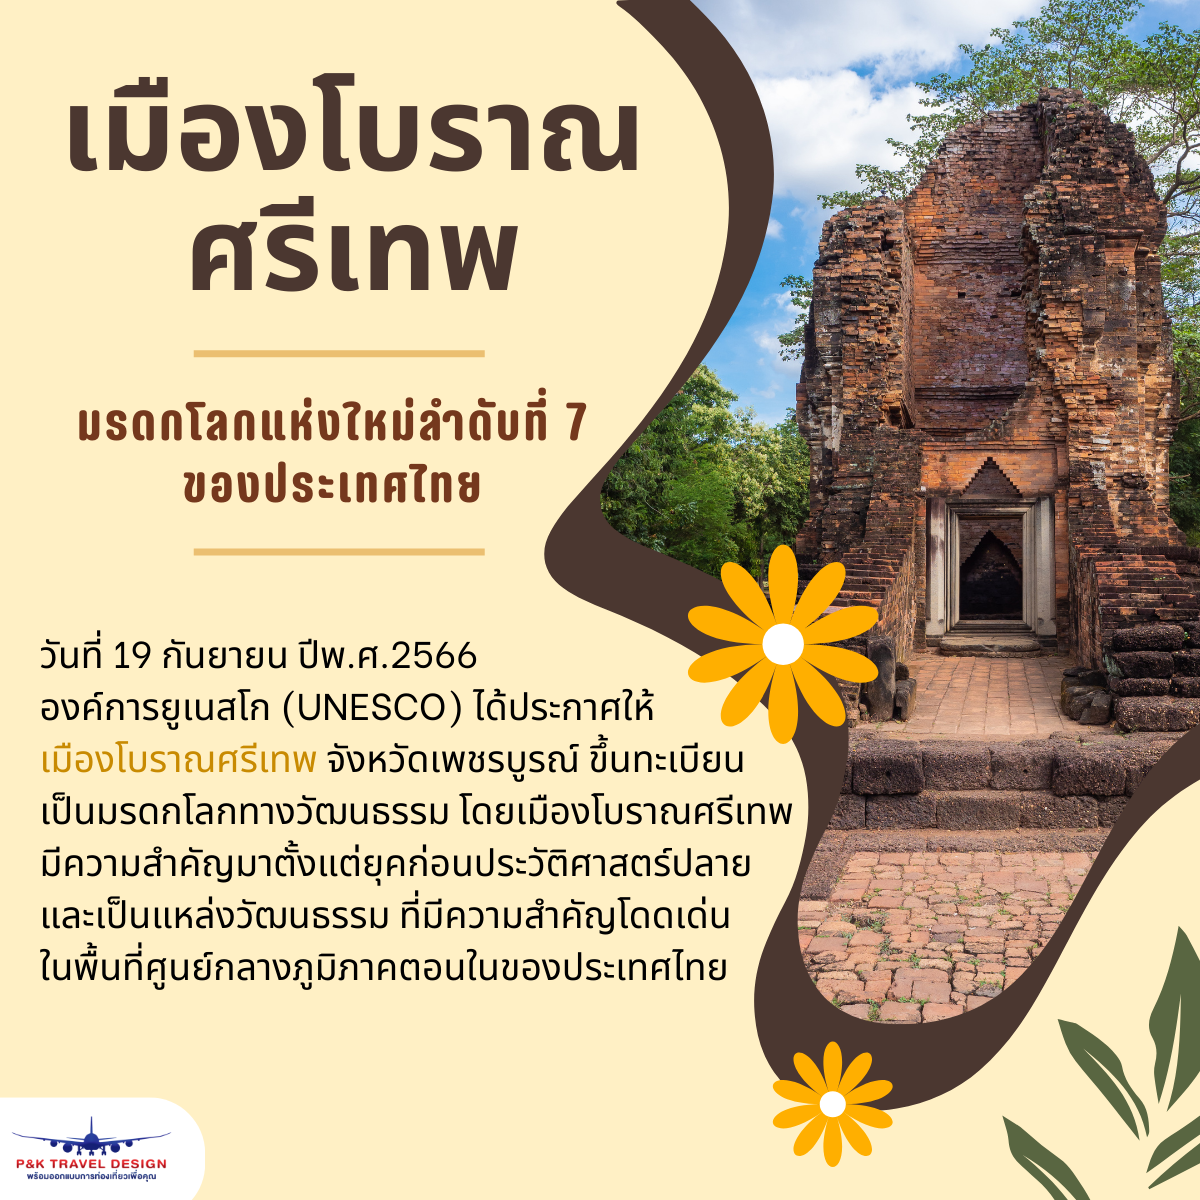 เมืองโบราณศรีเทพ มรดกโลกแห่งใหม่ลำดับที่ 7 ของประเทศไทย